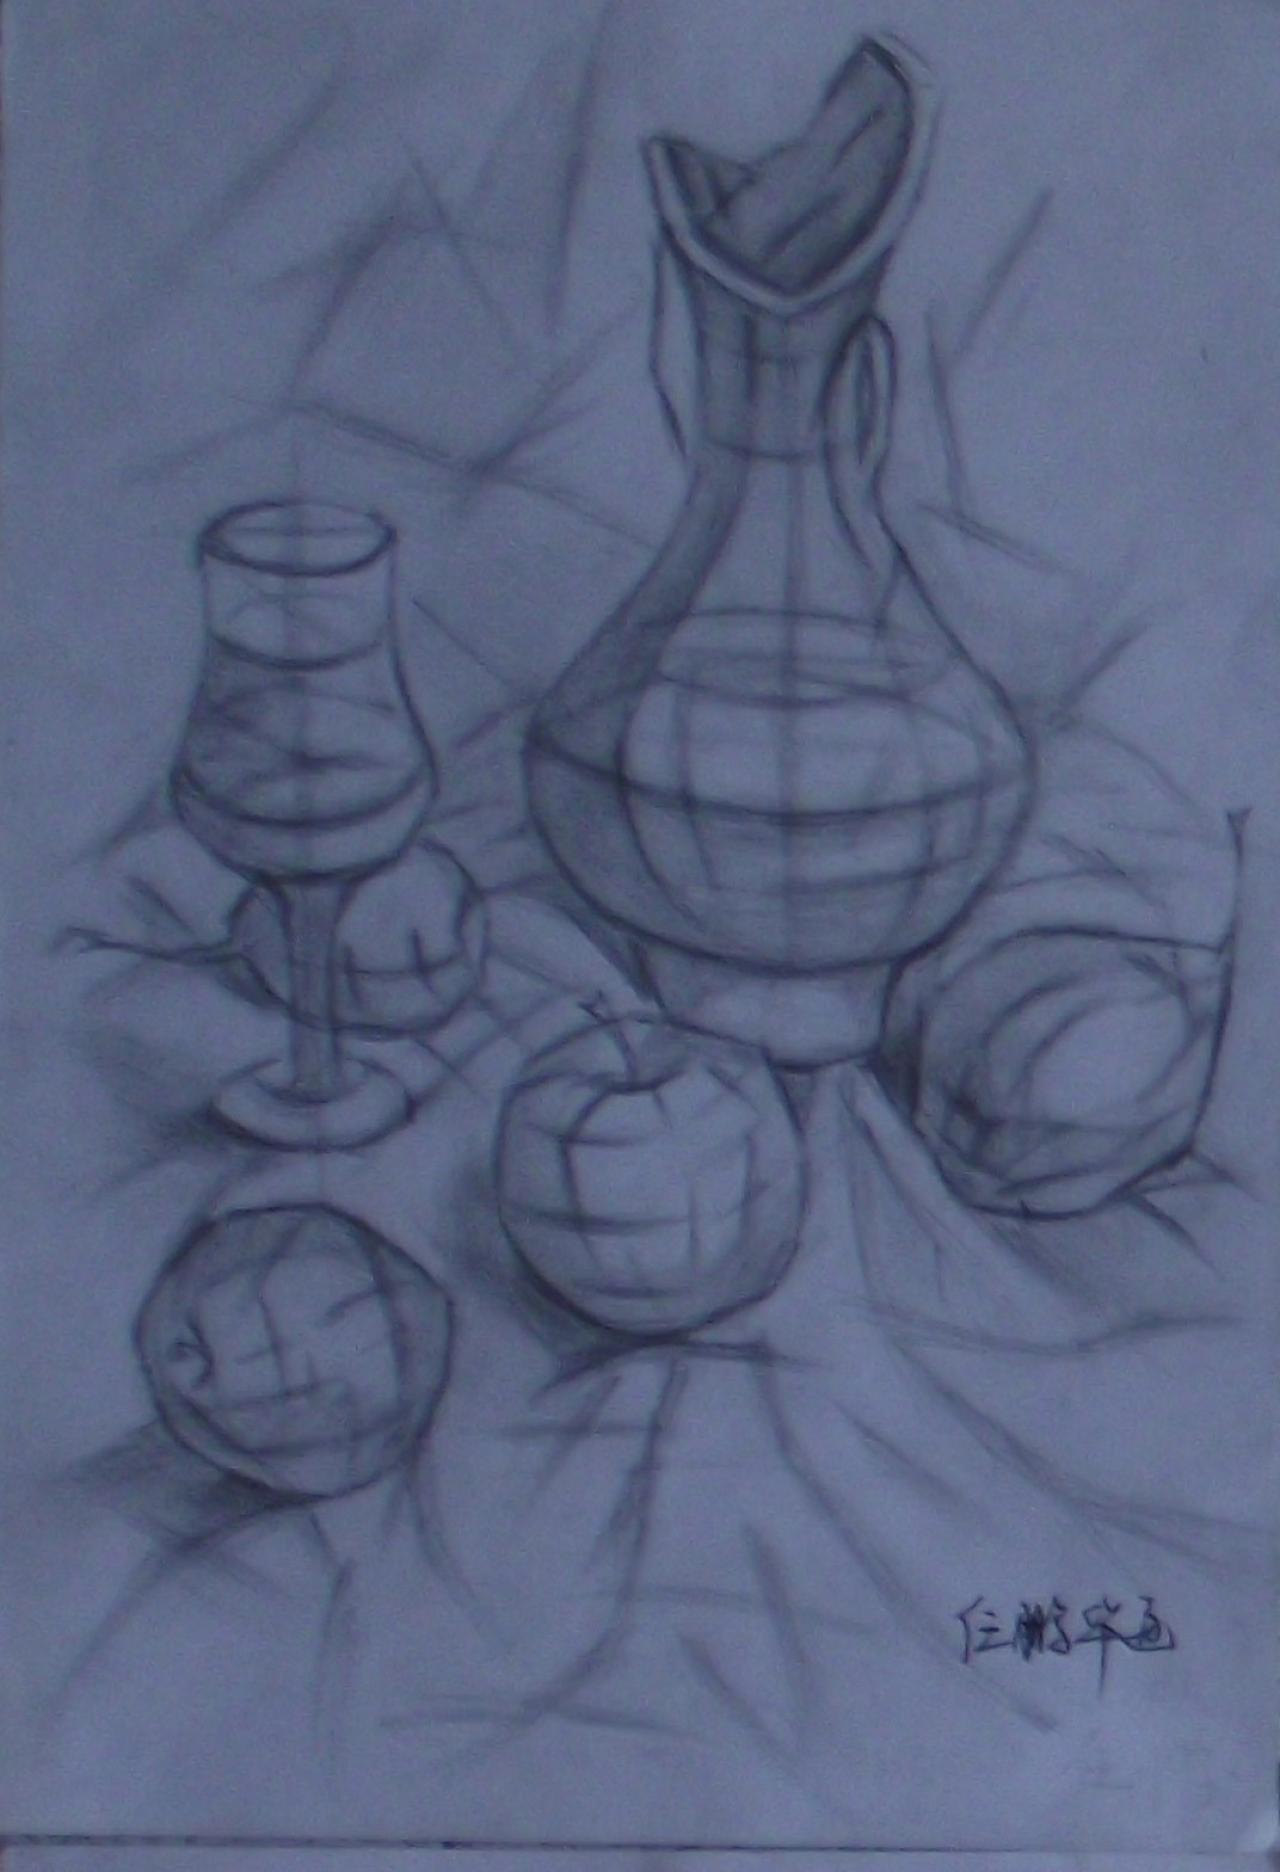 瓶子、杯子和水果结构素描 任鹏华画